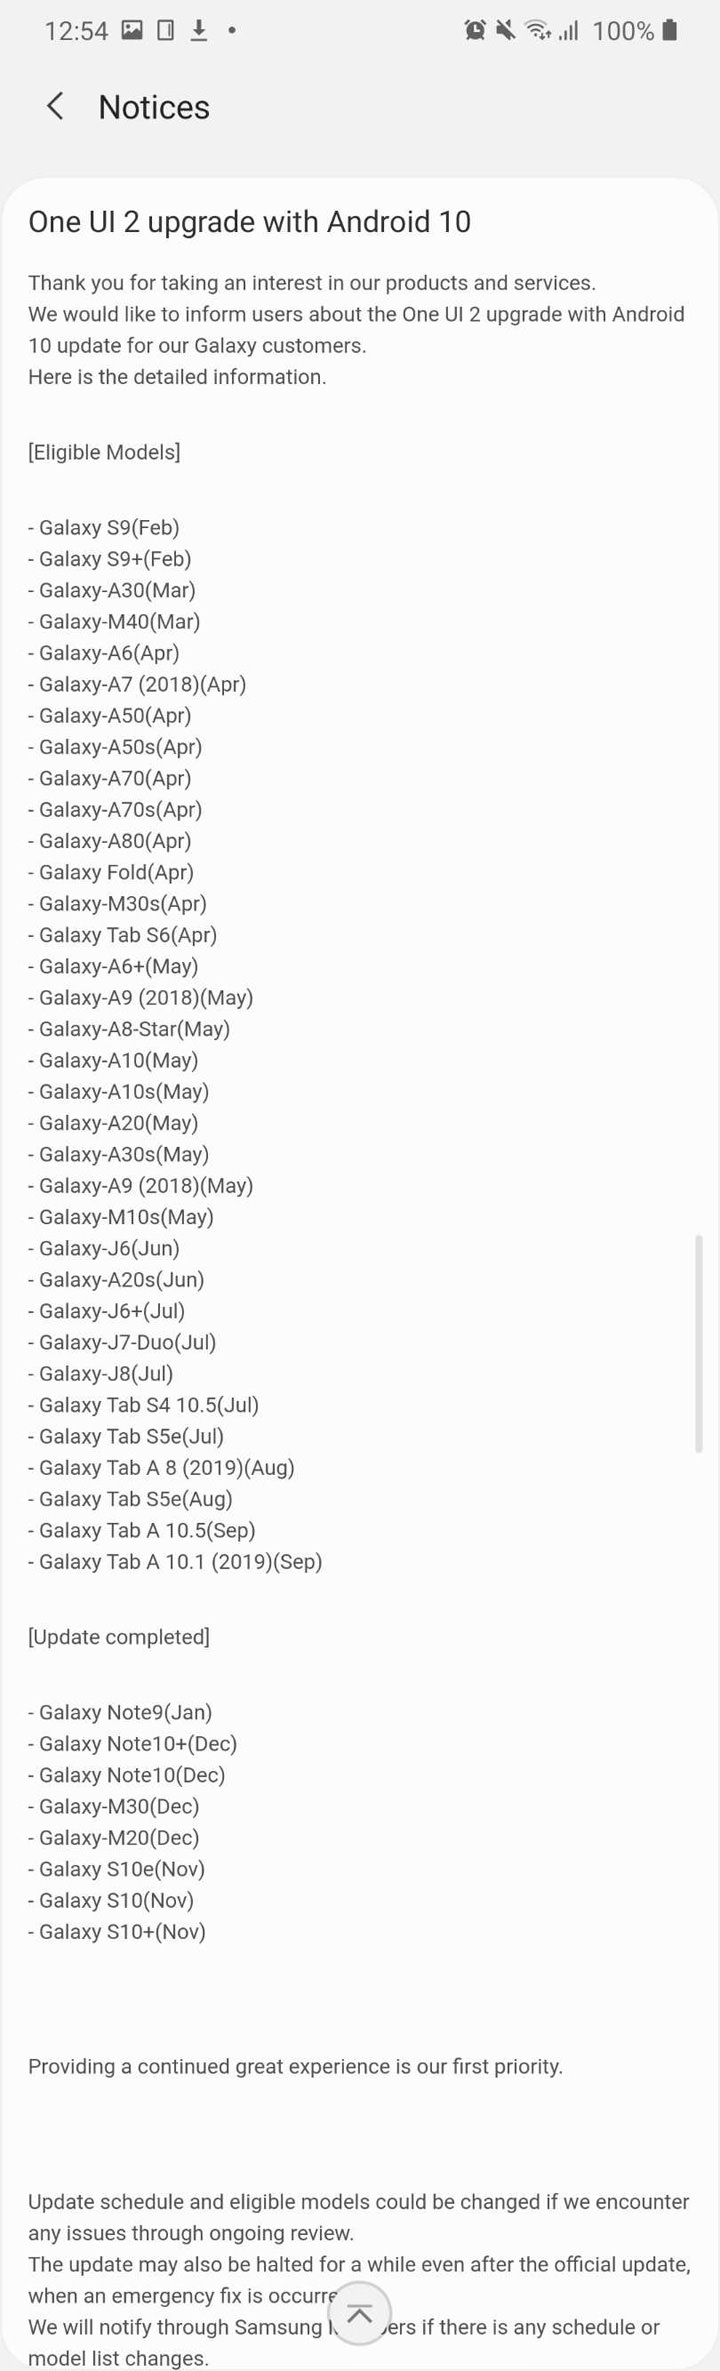 三星 Galaxy S9 系列將在二月獲得 OneUI 2.0 與 Android 10 更新！三月後還有 Galaxy A 系列與 Tab S 系列部份機種！ - 阿祥的網路筆記本